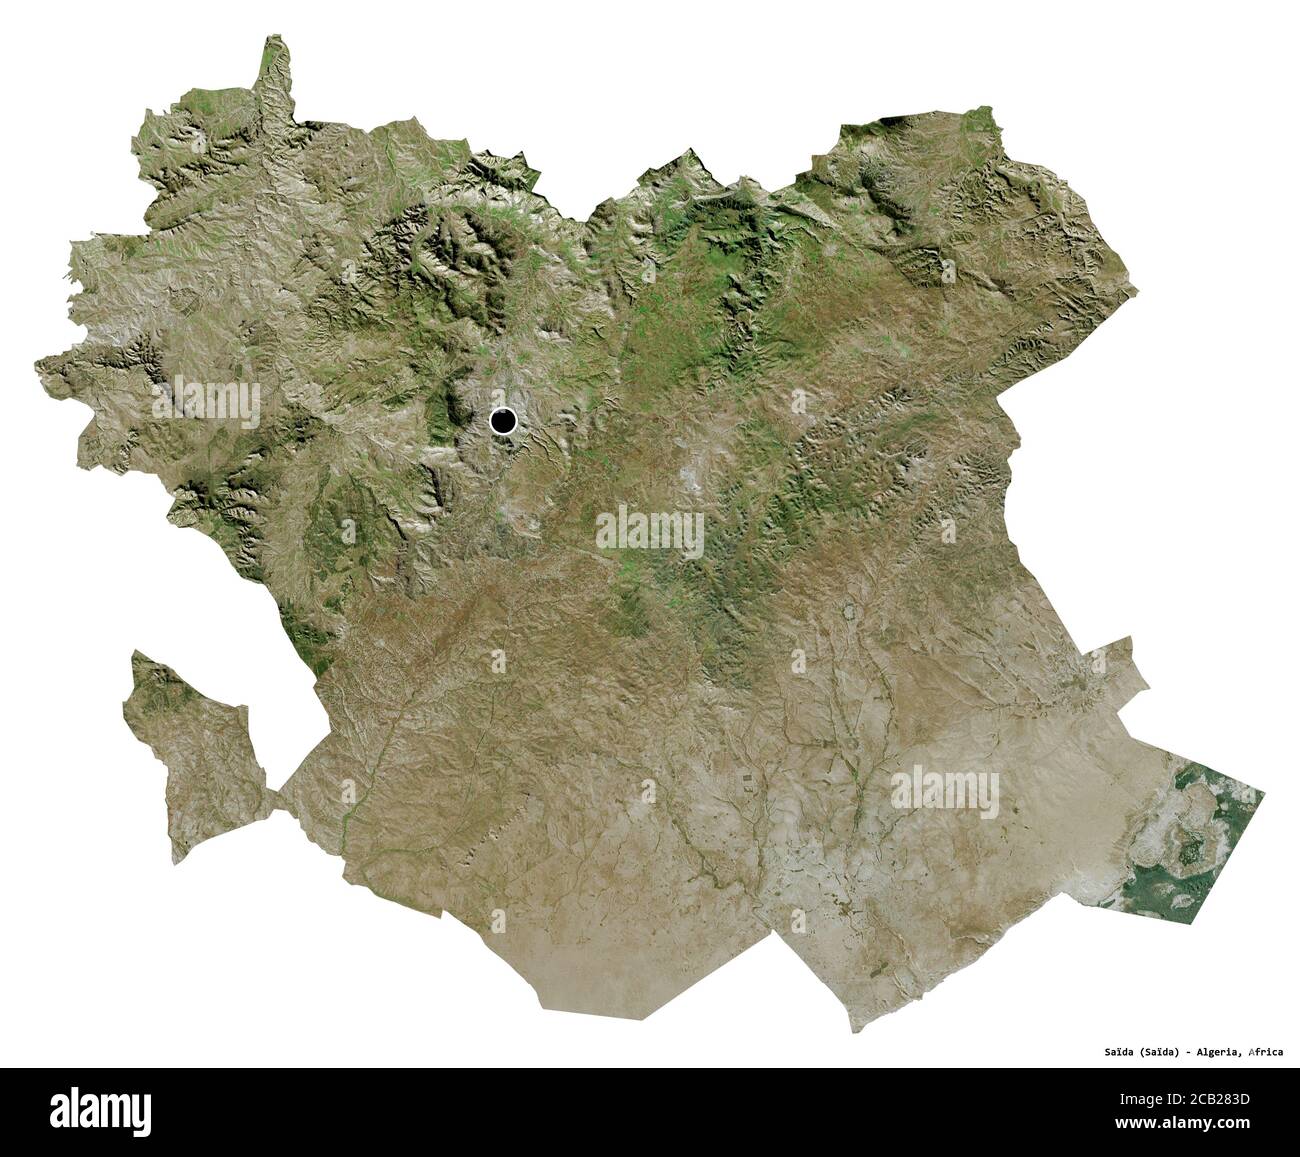 Forme de Saïda, province d'Algérie, avec sa capitale isolée sur fond blanc. Imagerie satellite. Rendu 3D Banque D'Images